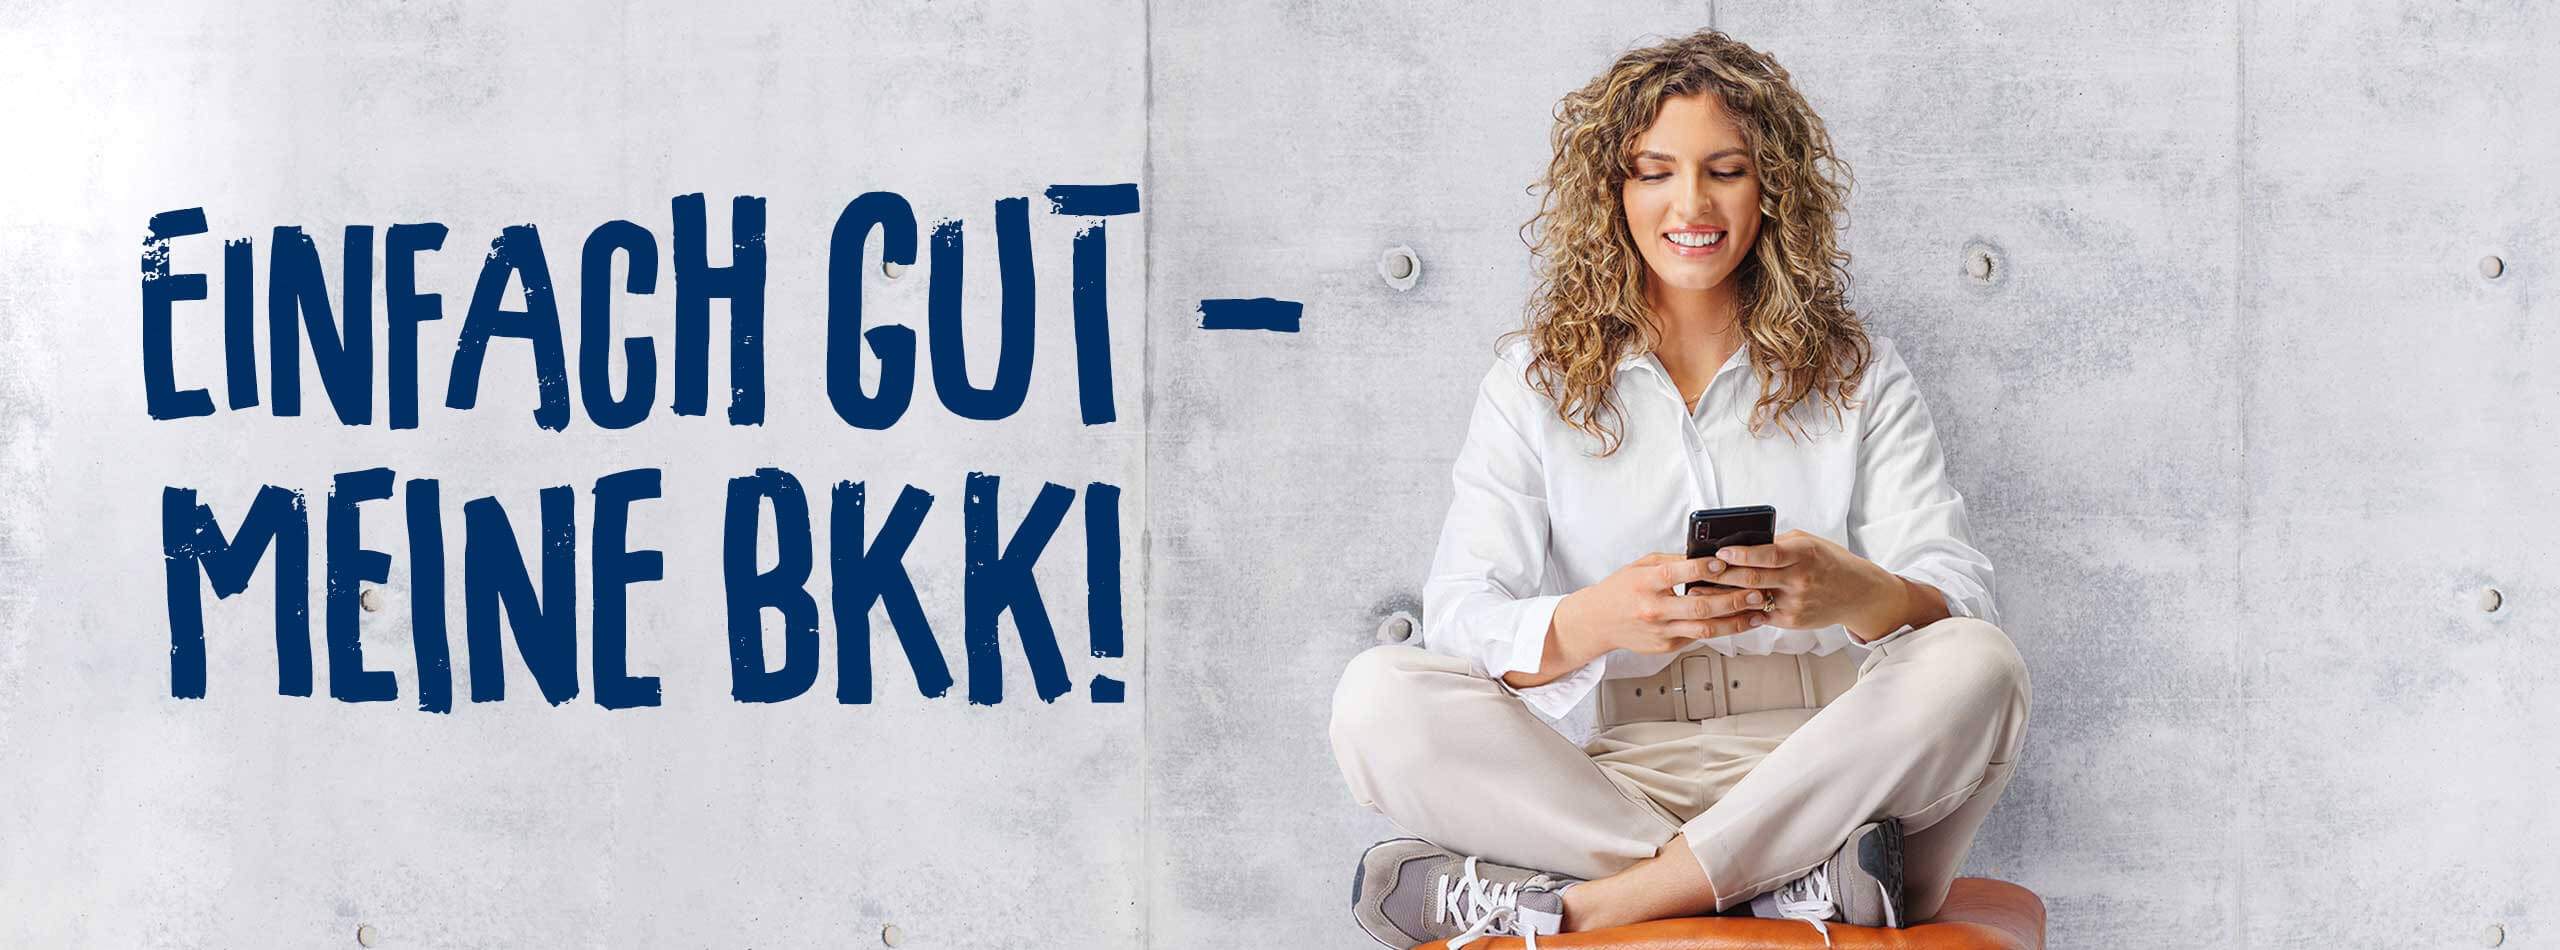 Lächelnde Frau bedient ein Smartphone. Neben ihr der Schriftzug "Einfach gut - meine BKK".